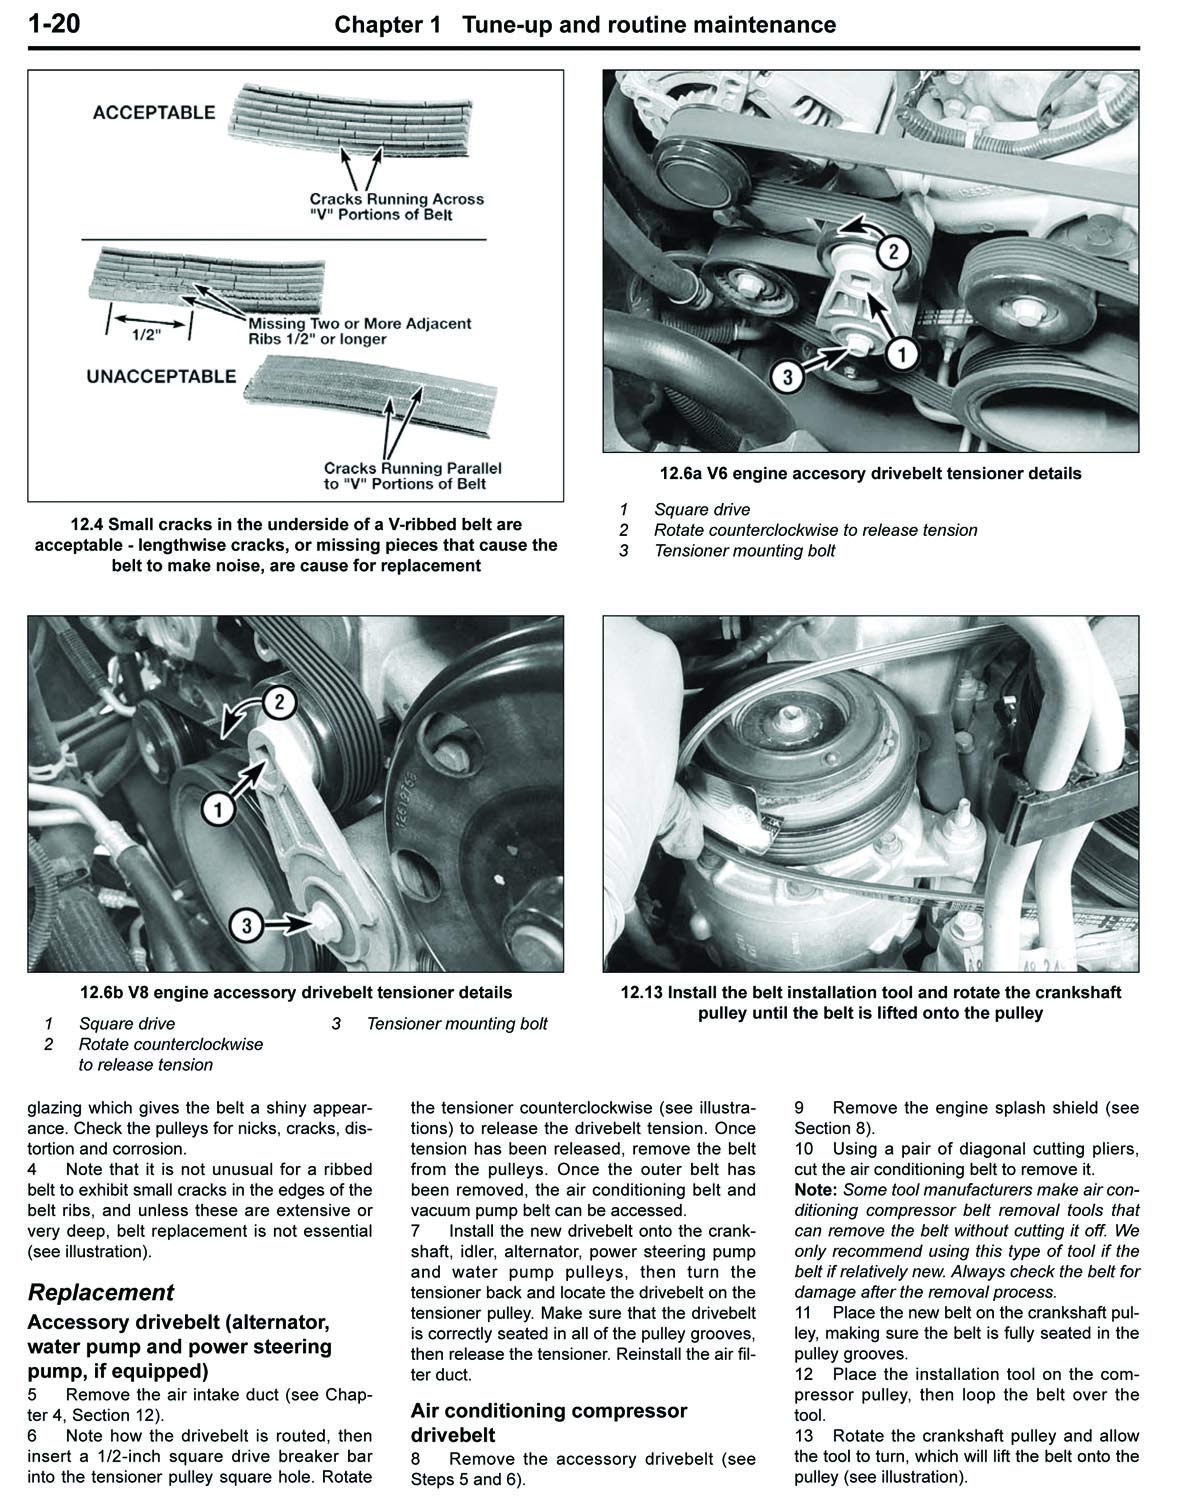 Chevrolet Colorado & GMC Canyon (04-12) Haynes Repair Manual (Haynes Automotive Repair Manual)